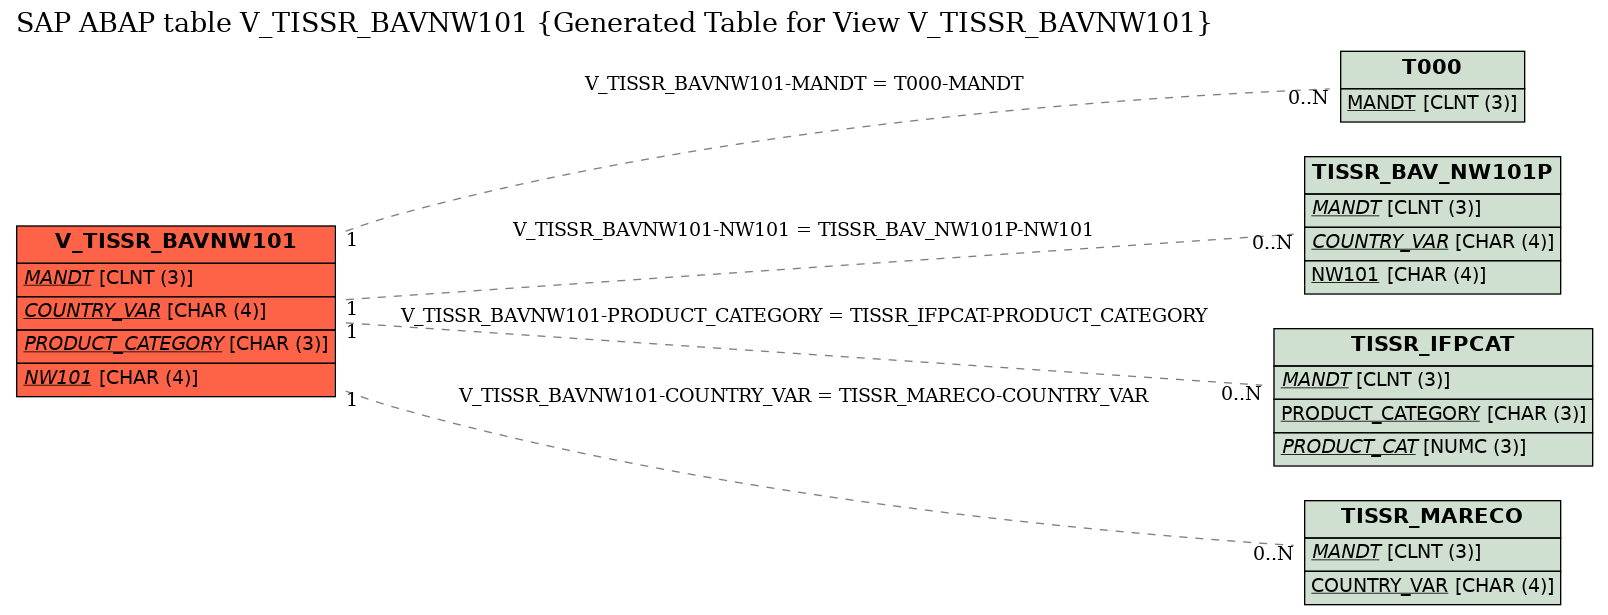 E-R Diagram for table V_TISSR_BAVNW101 (Generated Table for View V_TISSR_BAVNW101)